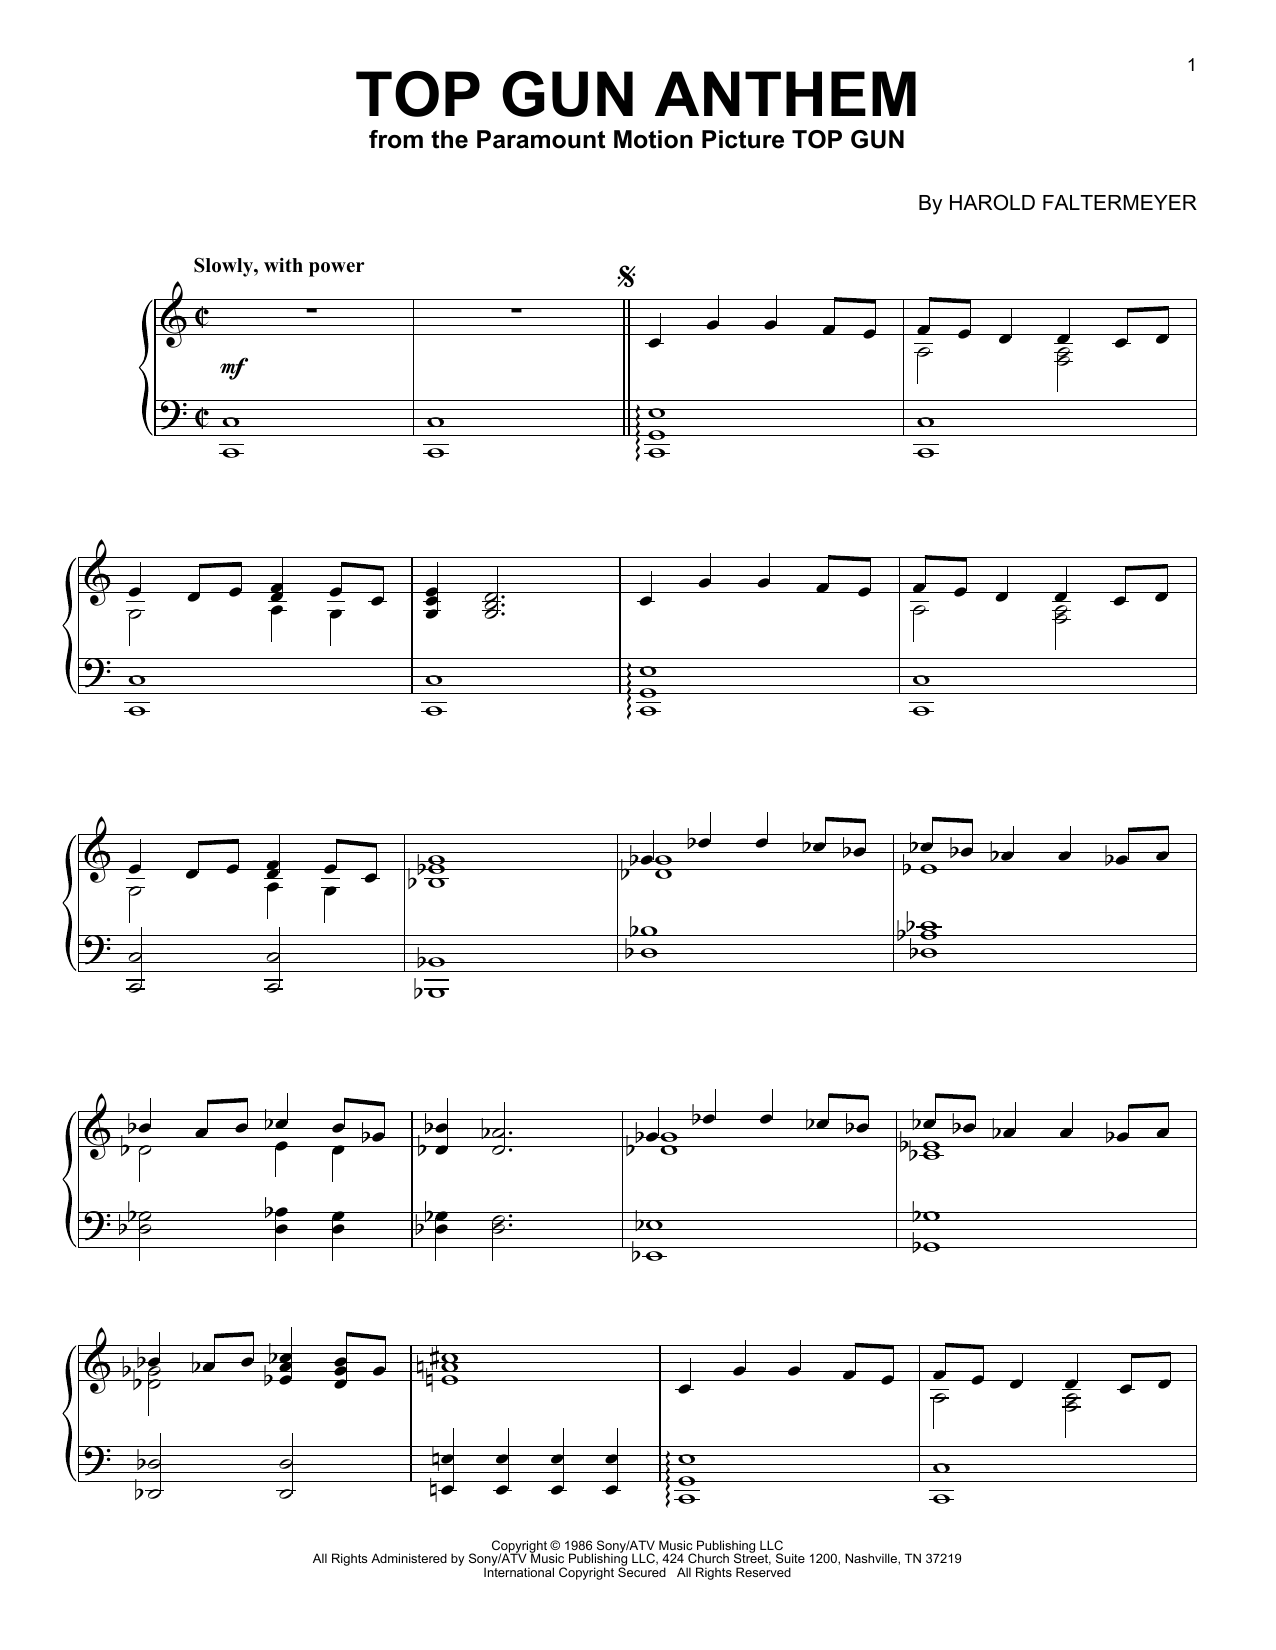 Harold Faltermeyer "Top Gun Anthem" Sheet Music Notes, Chords | Piano